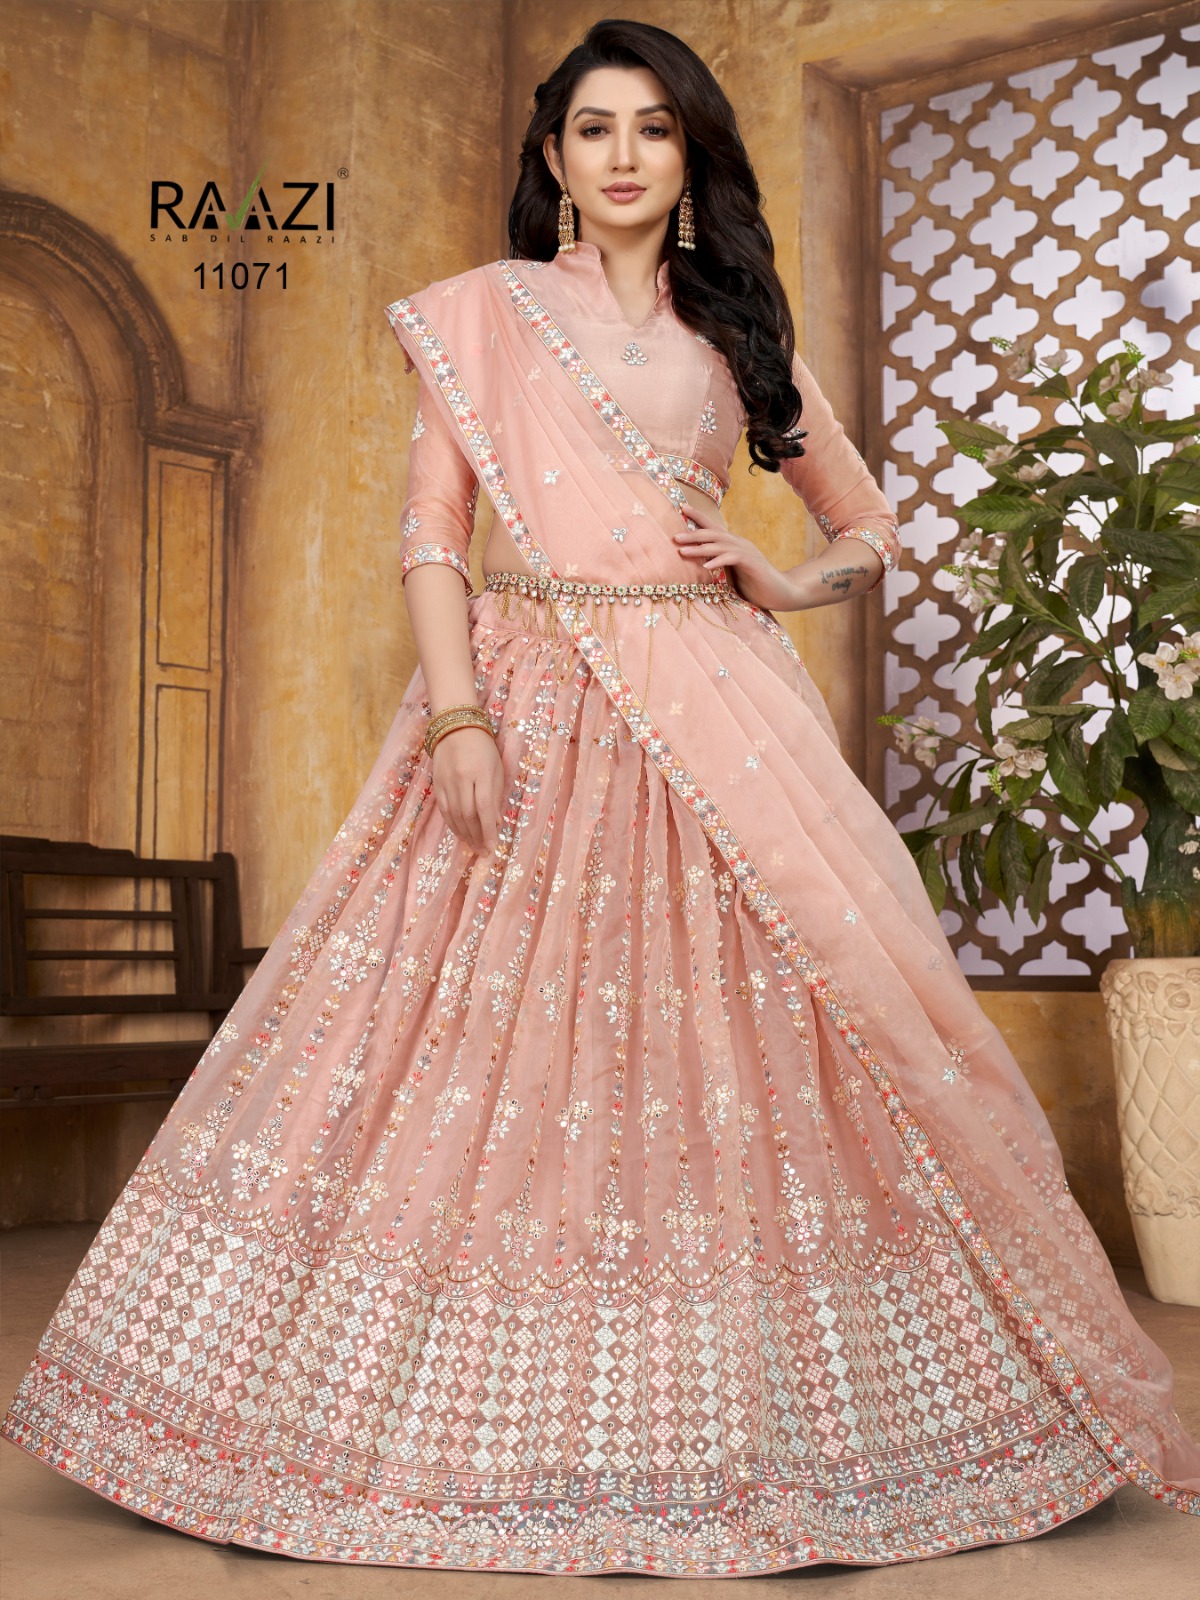 Rama Fashion Raazi Mirror Magic 11071